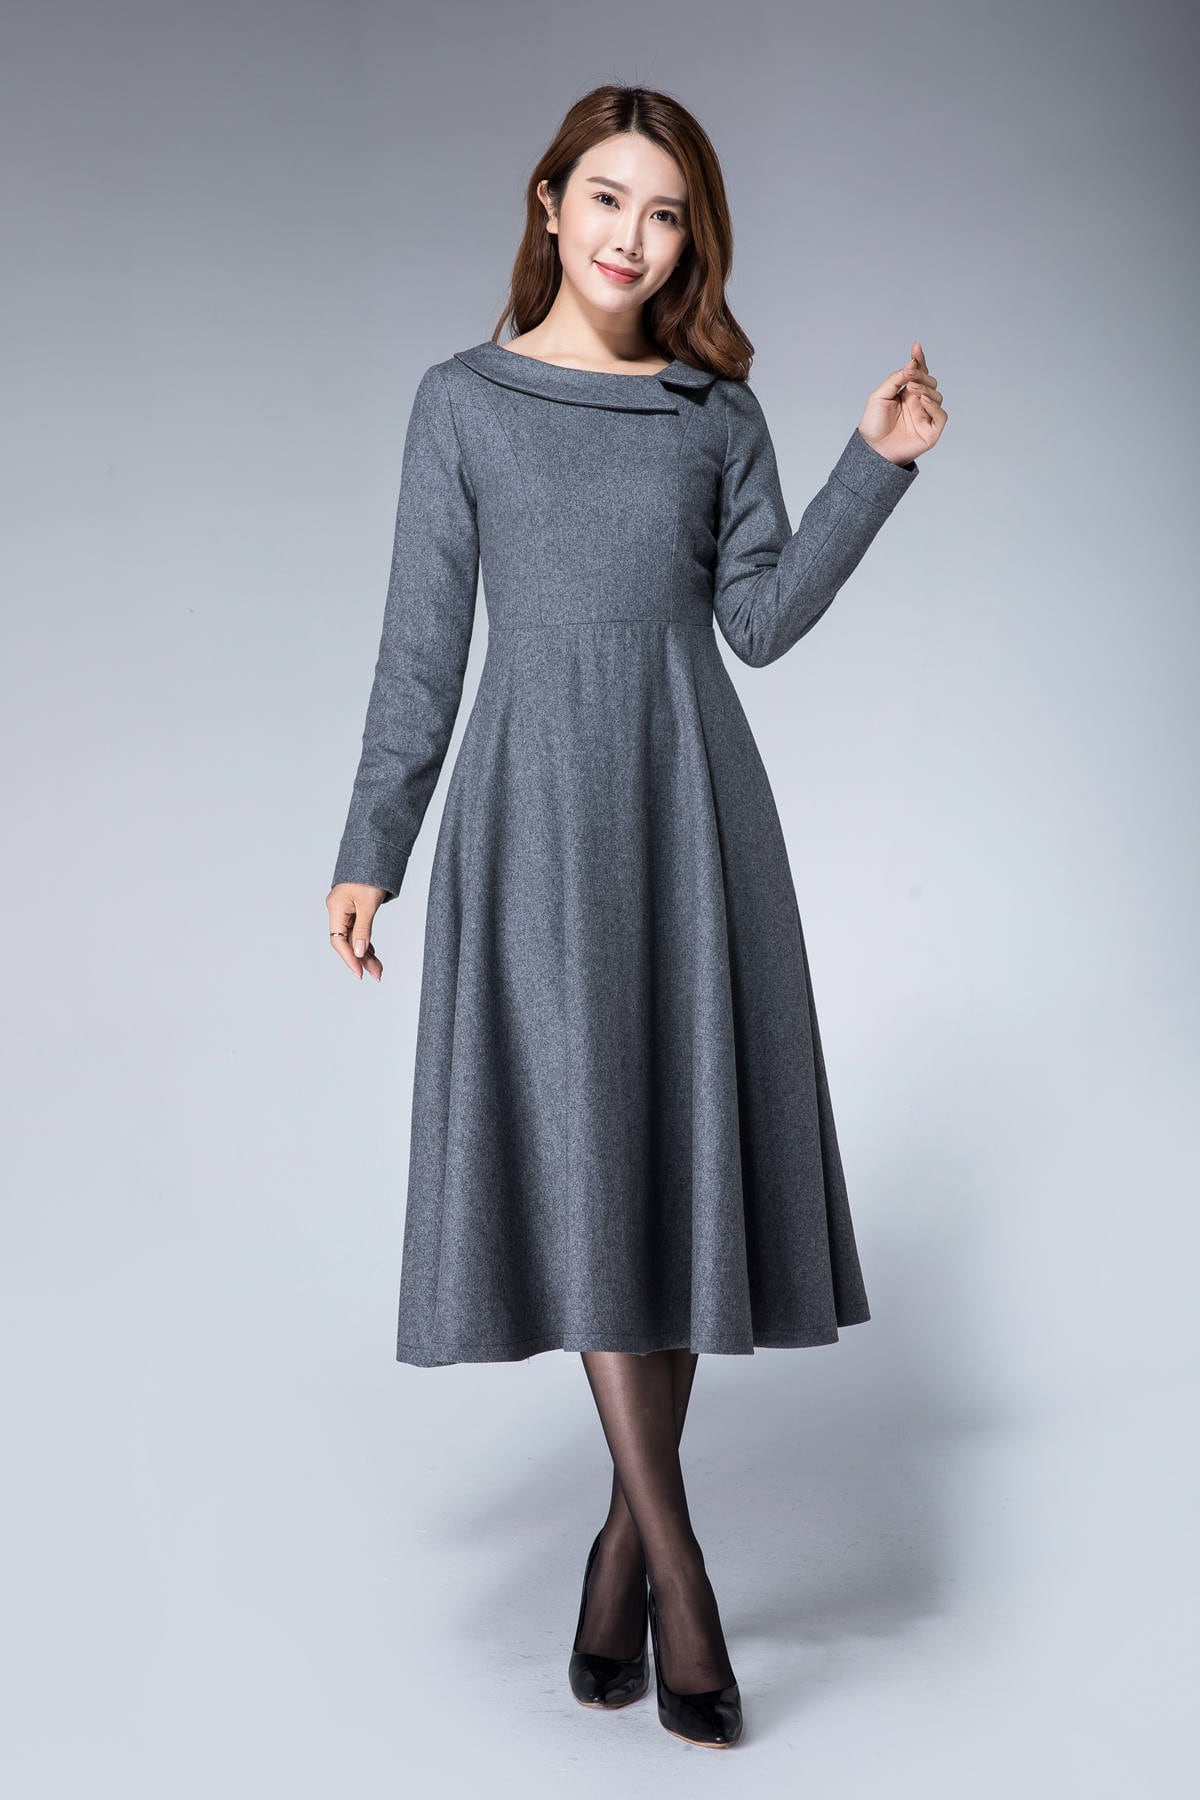 Gray Dress Formal Wool Dress Fall Dress for Women Warm - Etsy UK